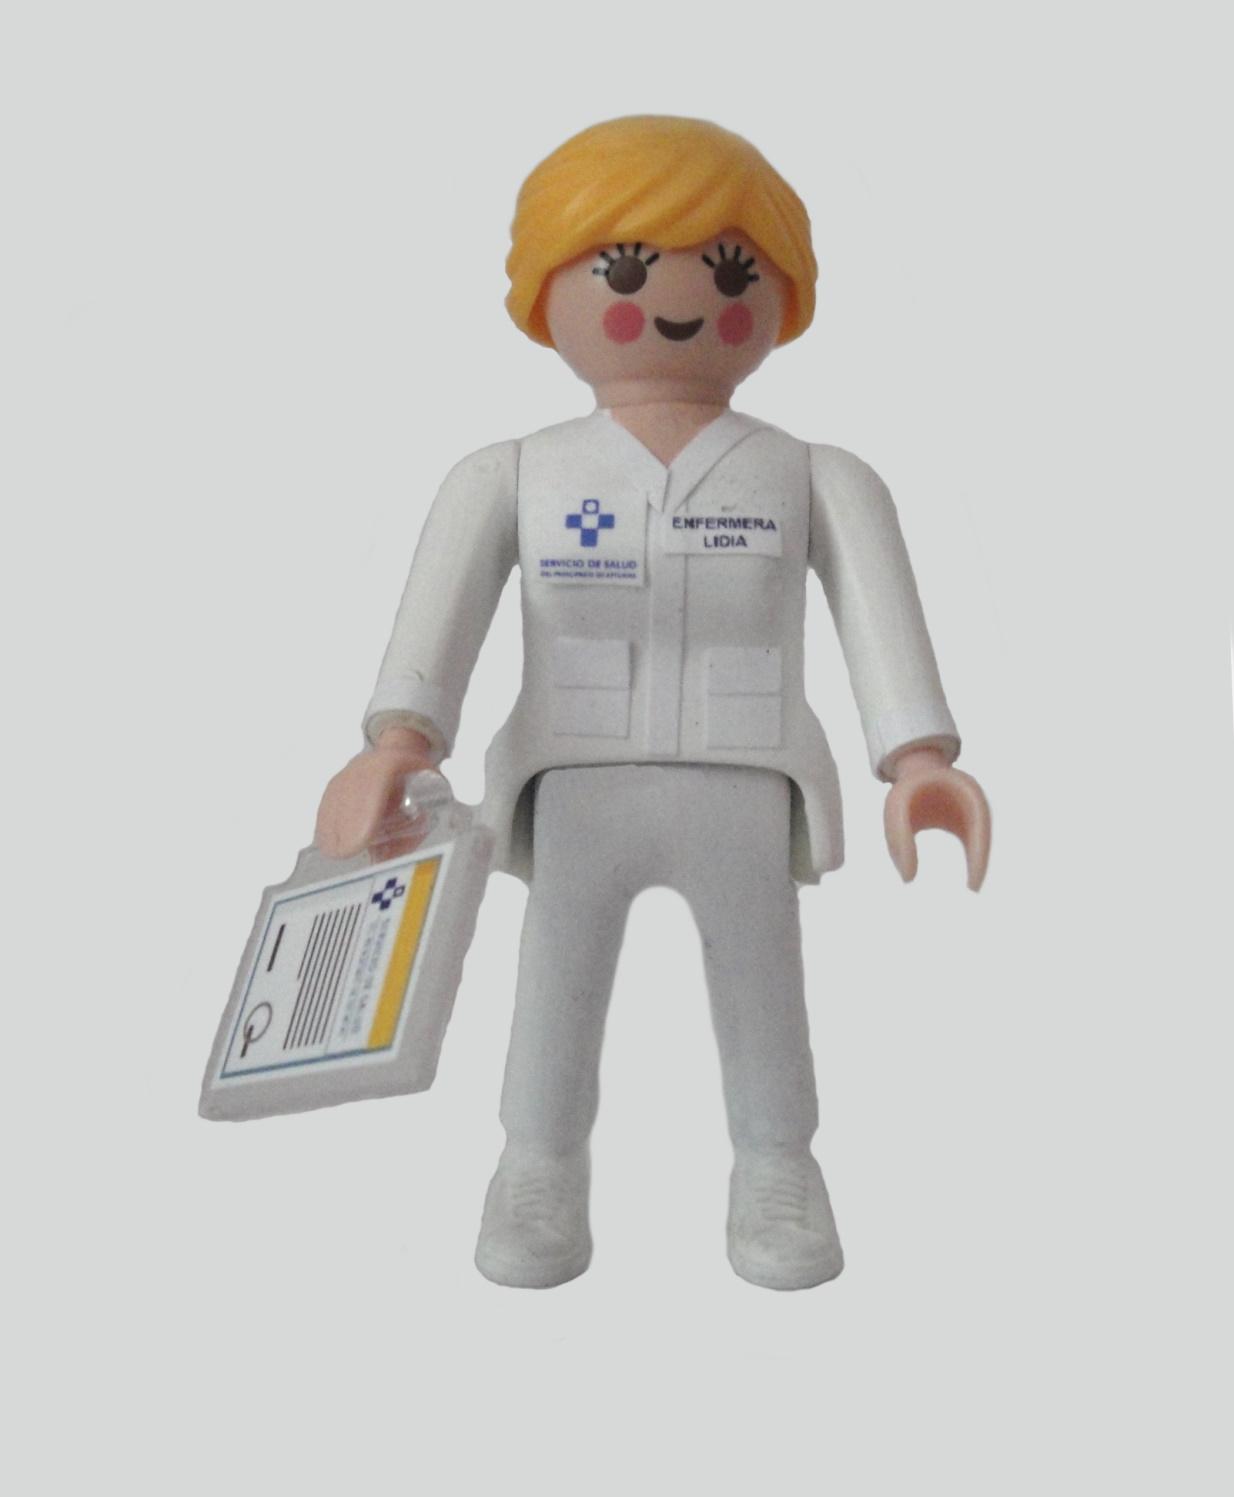 Playmobil personalizado con el uniforme de Enfermera del SESPA Servicio de Salud del Principado de Asturias mujer